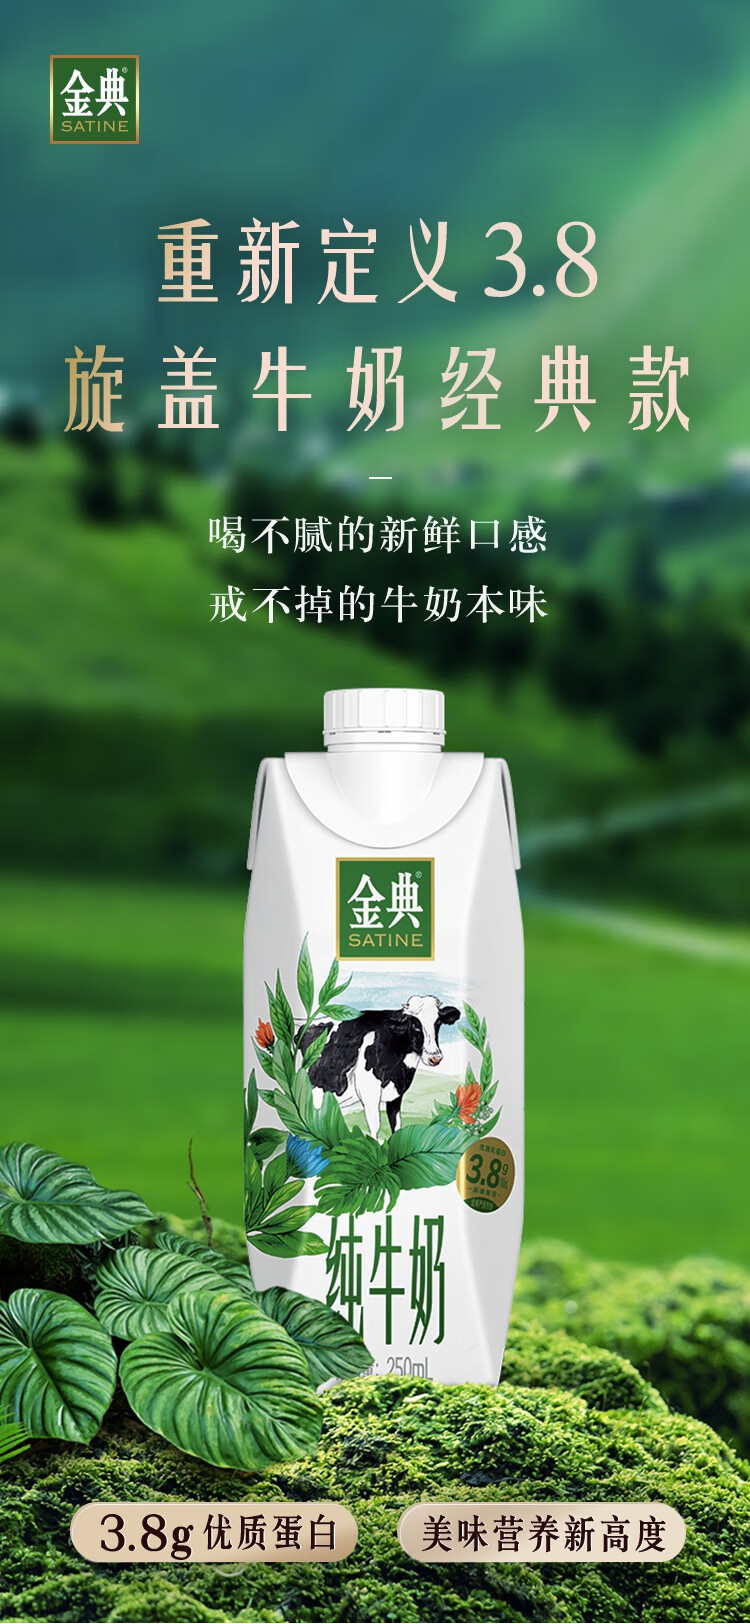 伊利2箱金典纯牛奶梦幻盖10瓶整箱纯牛奶【图片 价格 品牌 报价】